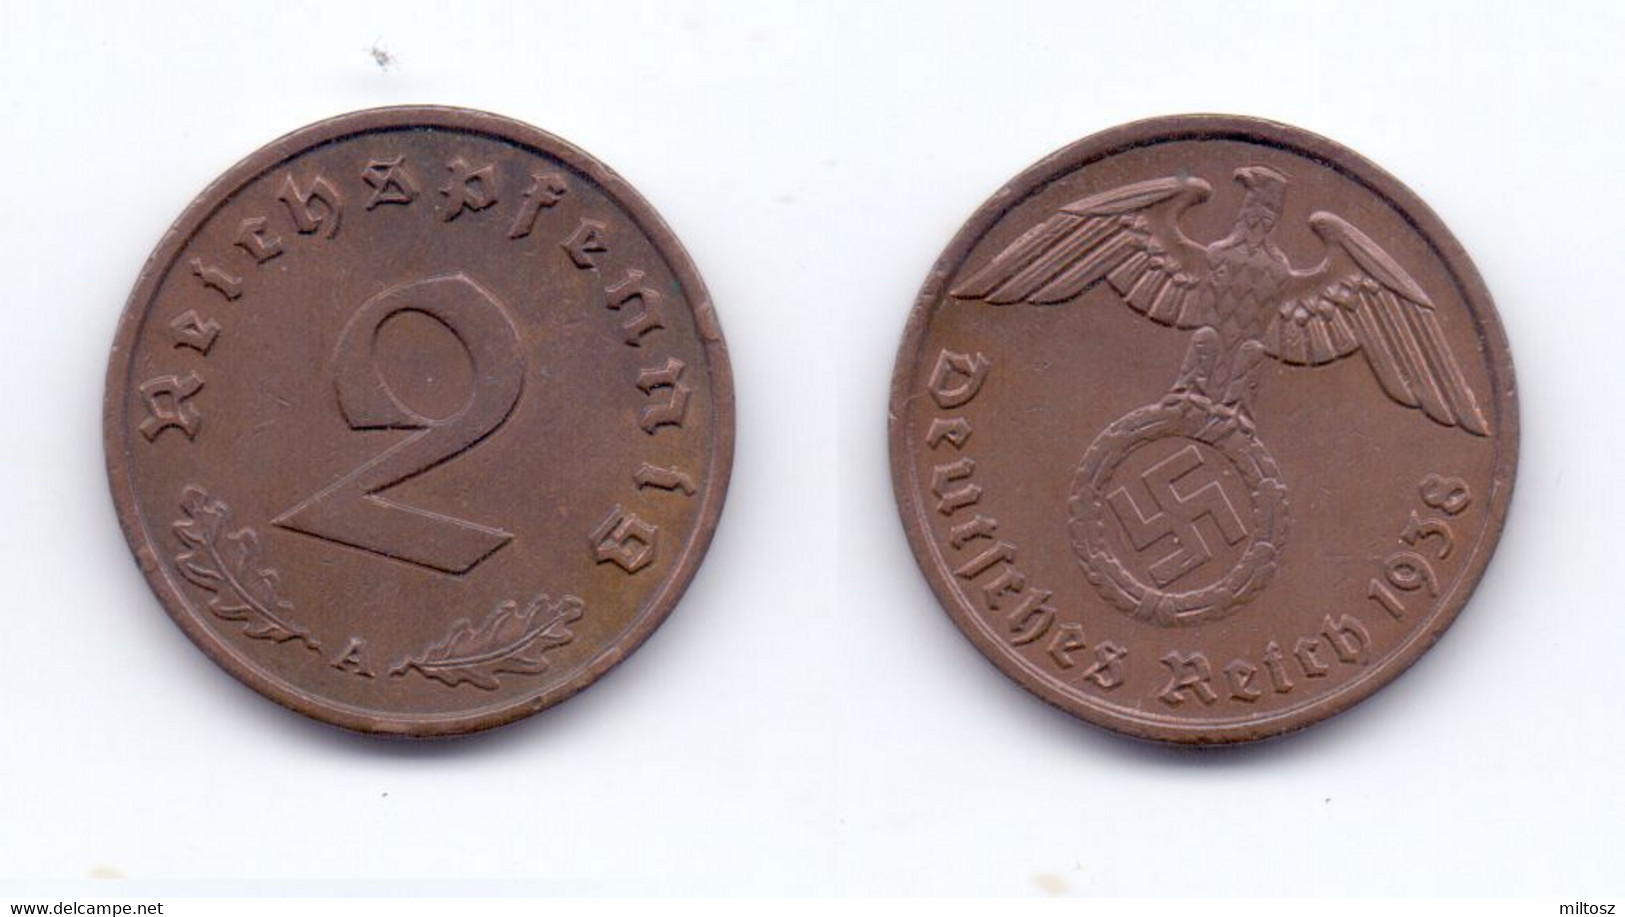 Germany 2 Reichspfennig 1938 A - 2 Reichspfennig